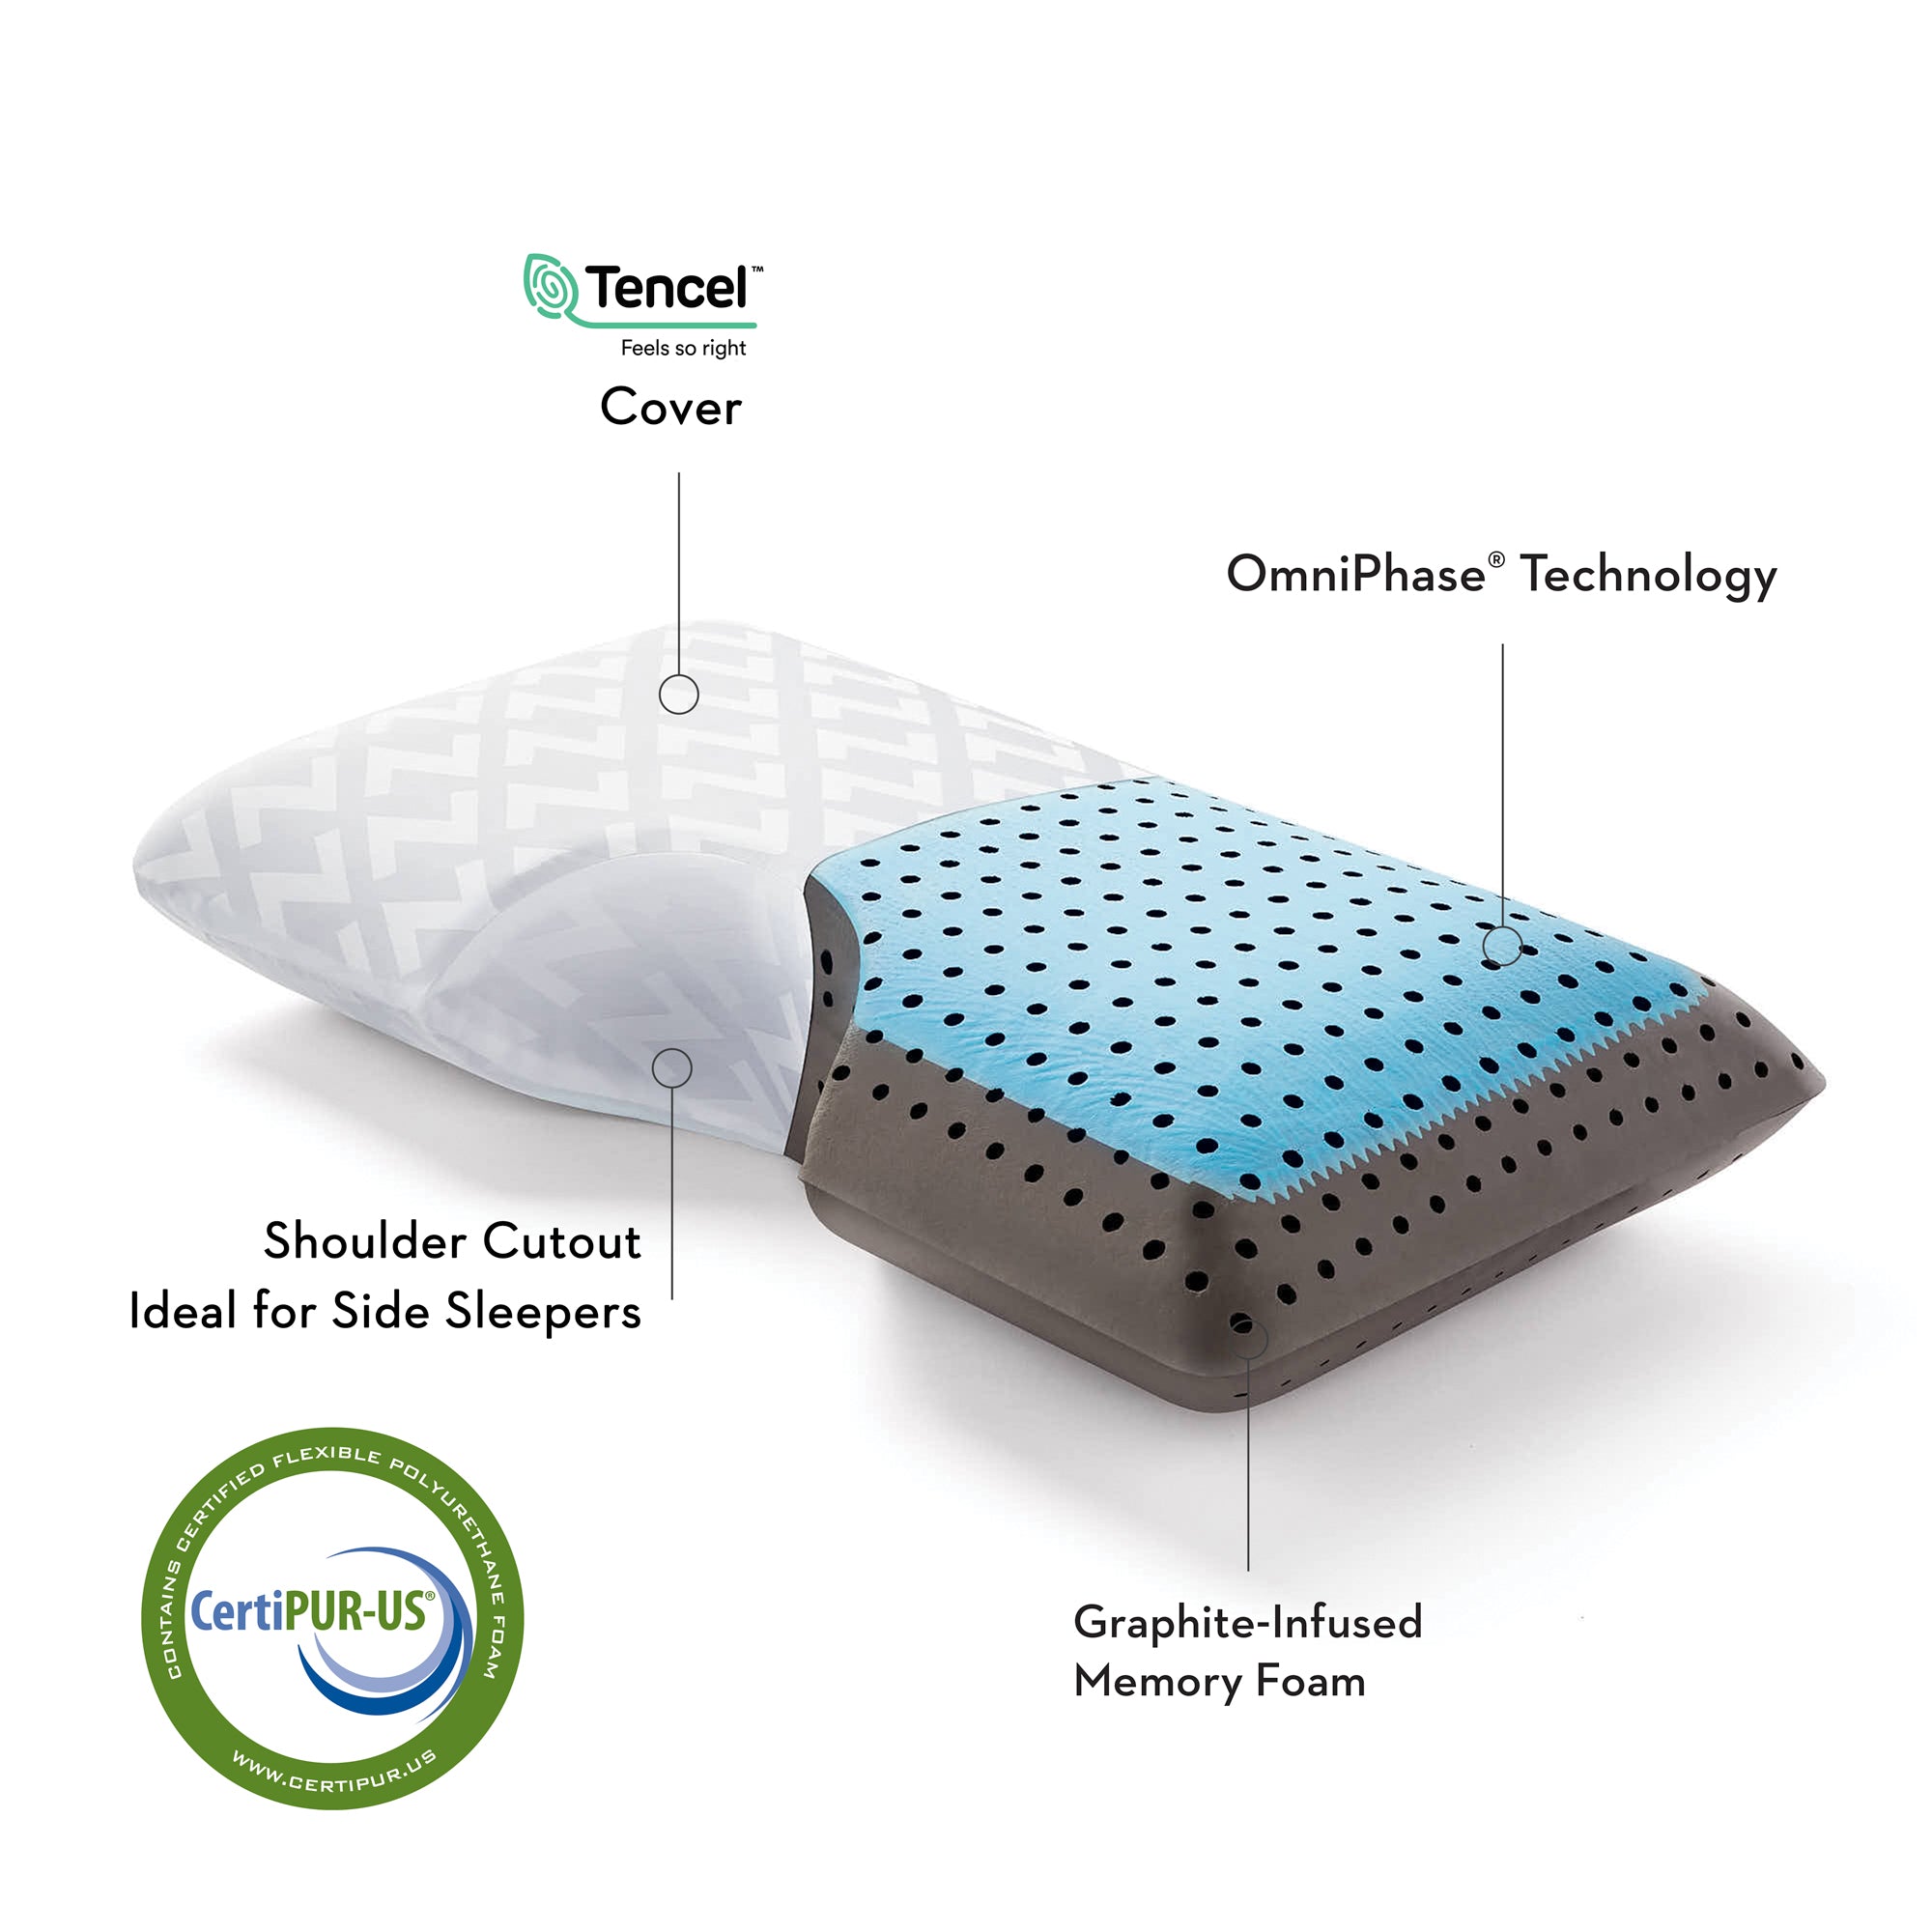 Shoulder CarbonCool™ LT + Omniphase®